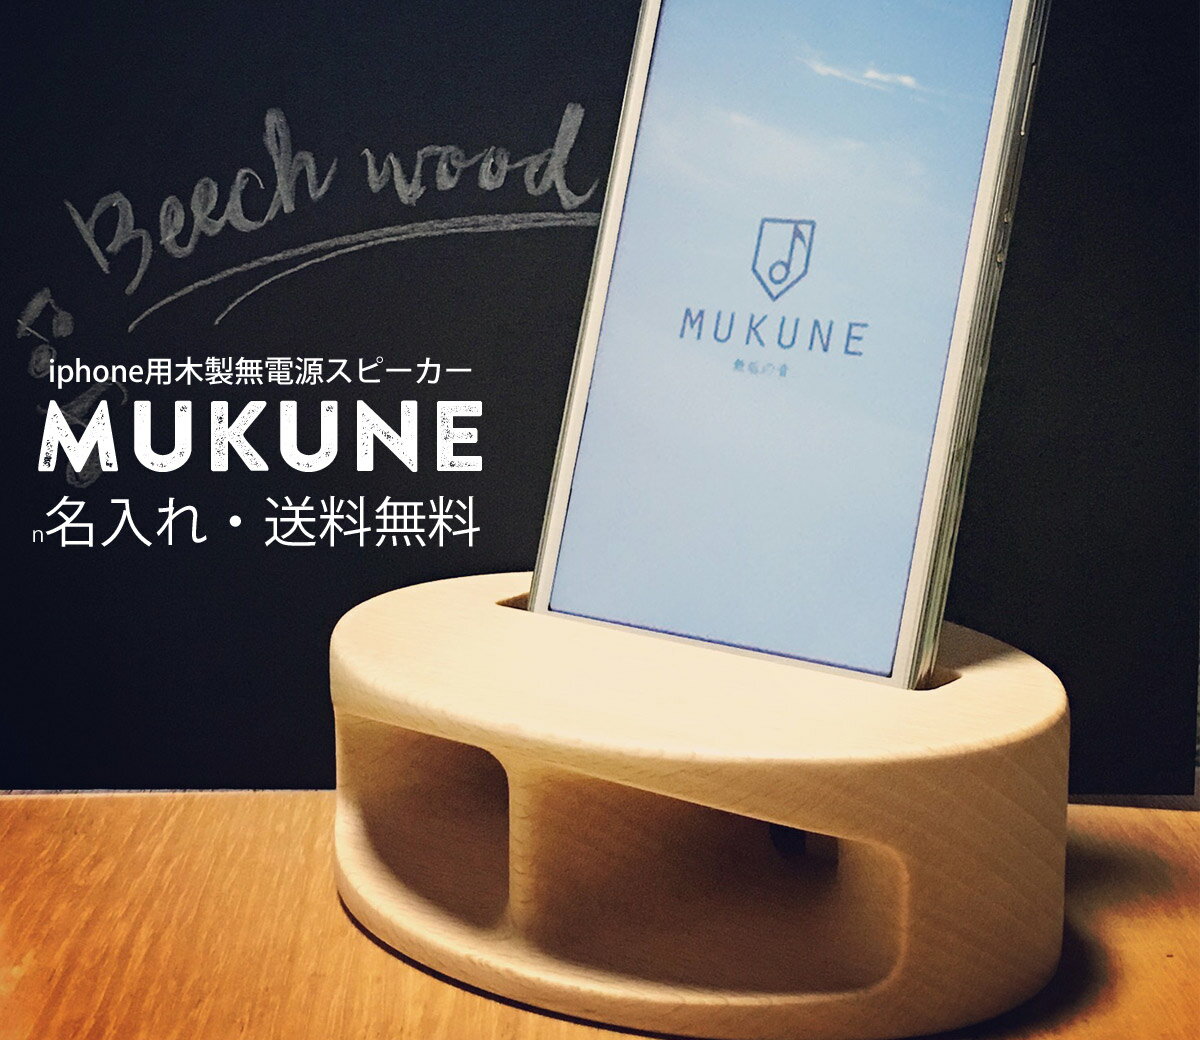 【名入れ】iPhone用木製無電源スピーカー「MUKUNE」ポータブルスピーカー 誕生日プレゼント ホワイトデープレゼント 父の日 母の日 木製（ブナ/ヤマザクラ）